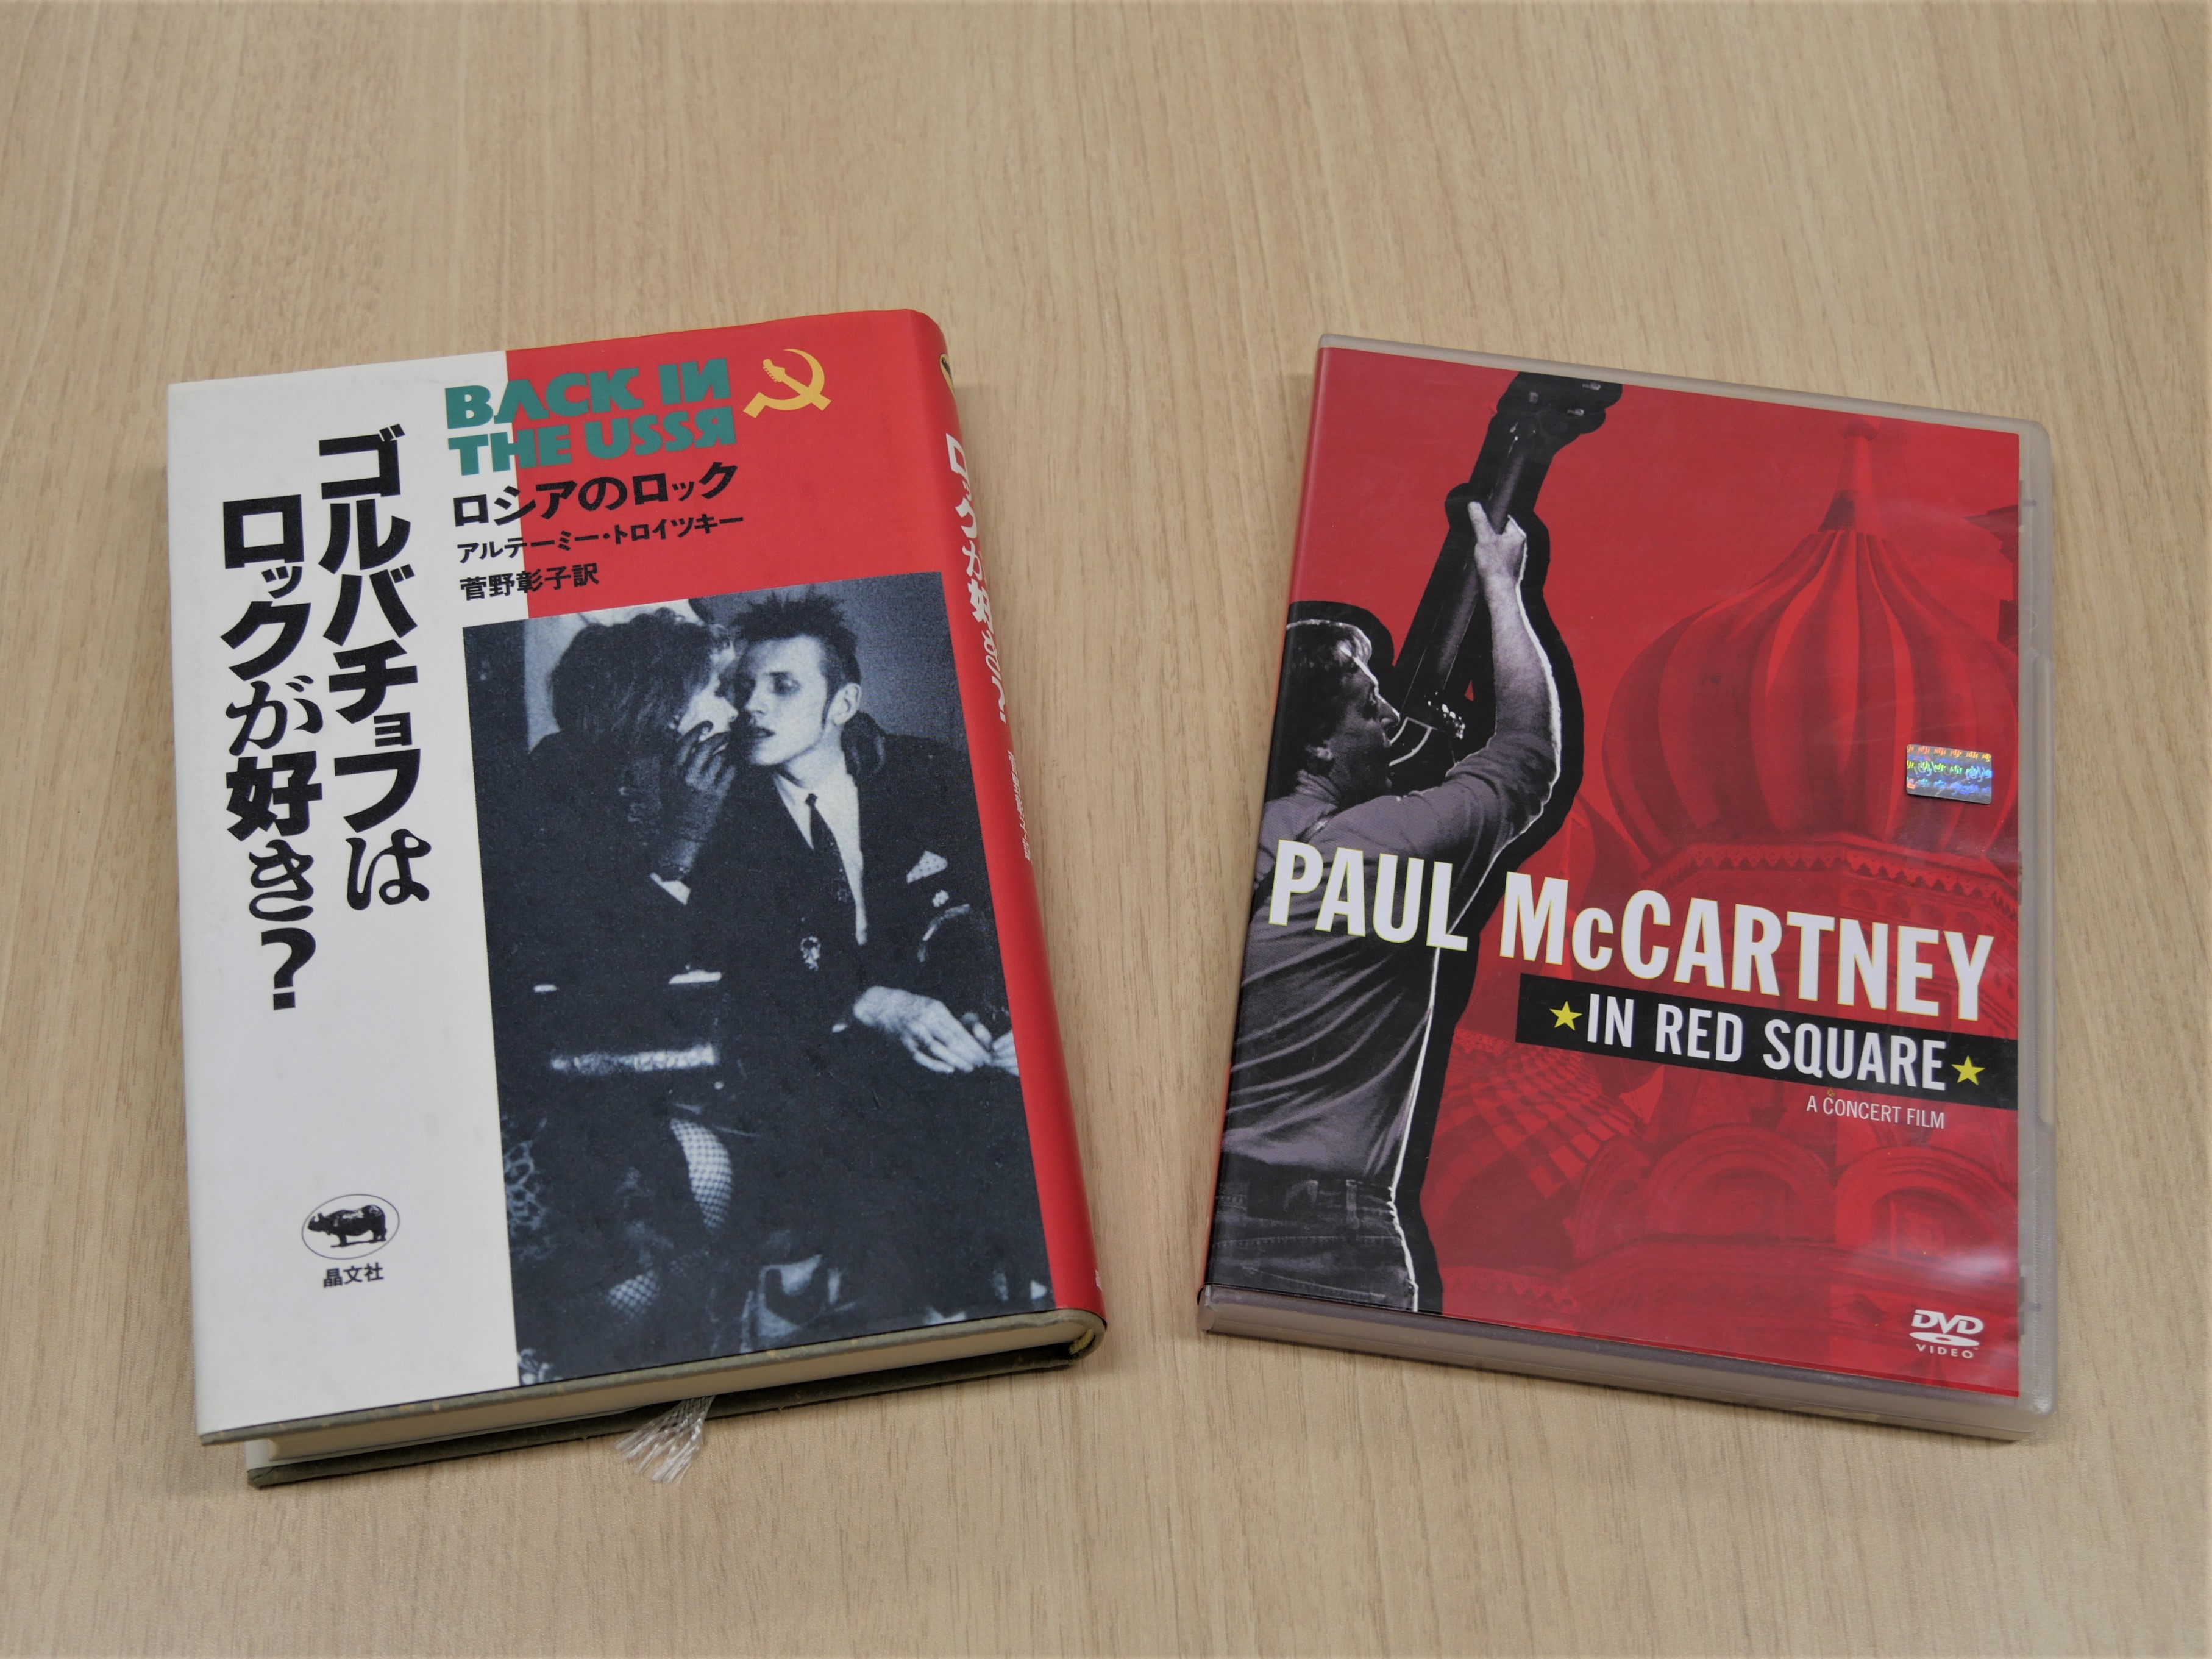 写真左、『ゴルバチョフはロックが好き？』（アルテーミー・トロイツキー著／晶文社刊）。写真右、ＤＶＤ『Paul McCartney in Red Square』（Warner Music Vision）。